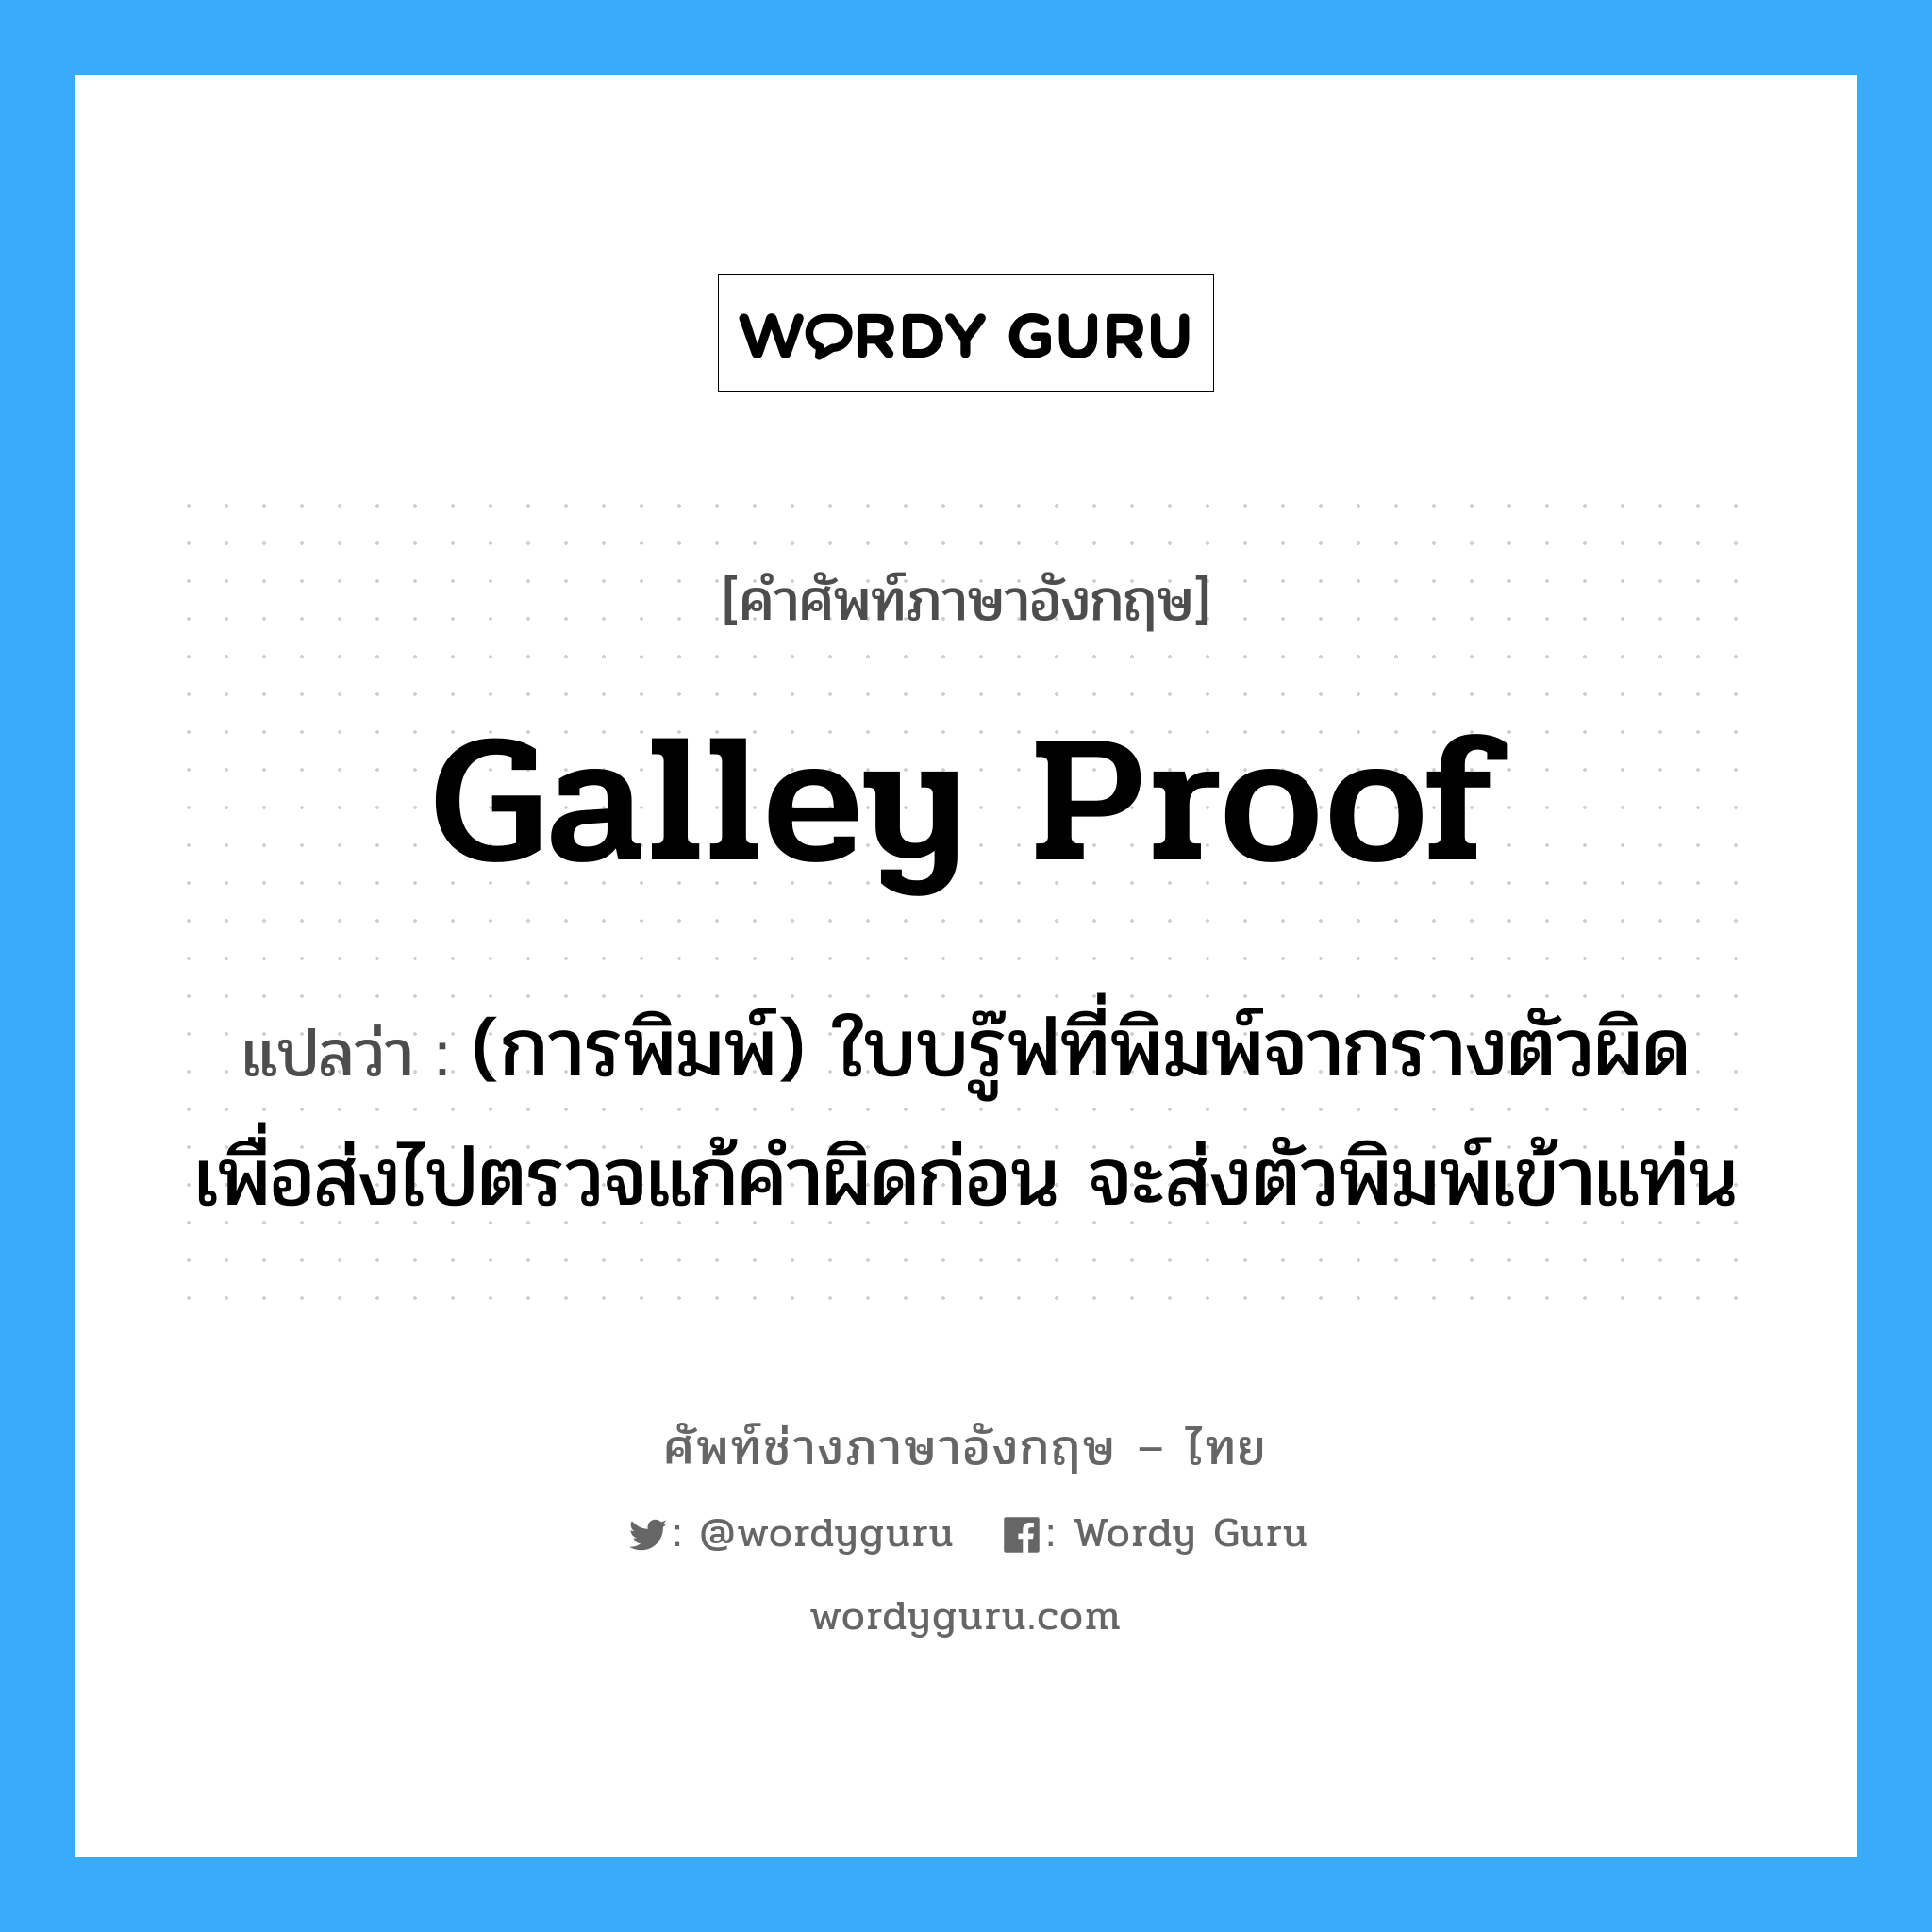 galley proof แปลว่า?, คำศัพท์ช่างภาษาอังกฤษ - ไทย galley proof คำศัพท์ภาษาอังกฤษ galley proof แปลว่า (การพิมพ์) ใบบรู๊ฟที่พิมพ์จากรางตัวผิด เพื่อส่งไปตรวจแก้คำผิดก่อน จะส่งตัวพิมพ์เข้าแท่น